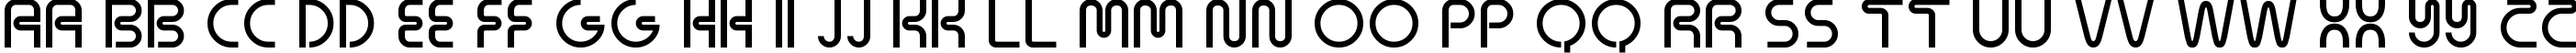 Пример написания английского алфавита шрифтом Neons